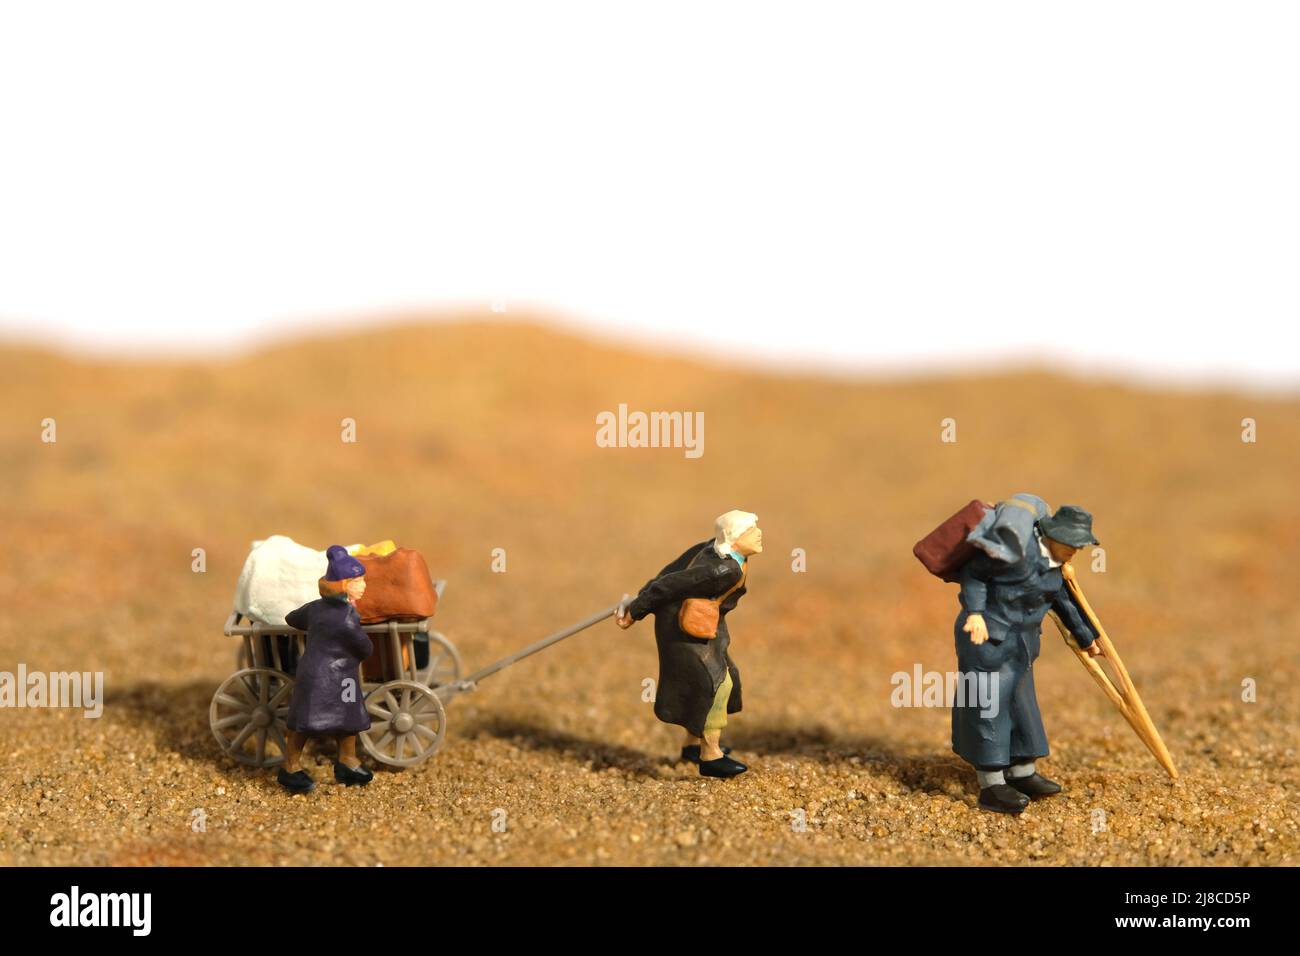 Miniatur Menschen Spielzeug Figur Fotografie. Ein älteres Paar mit einem Enkelkind, der als Flüchtling unterwegs war, bewegte sich mitten in der Wüste und ging zum Flüchtlingslager Stockfoto